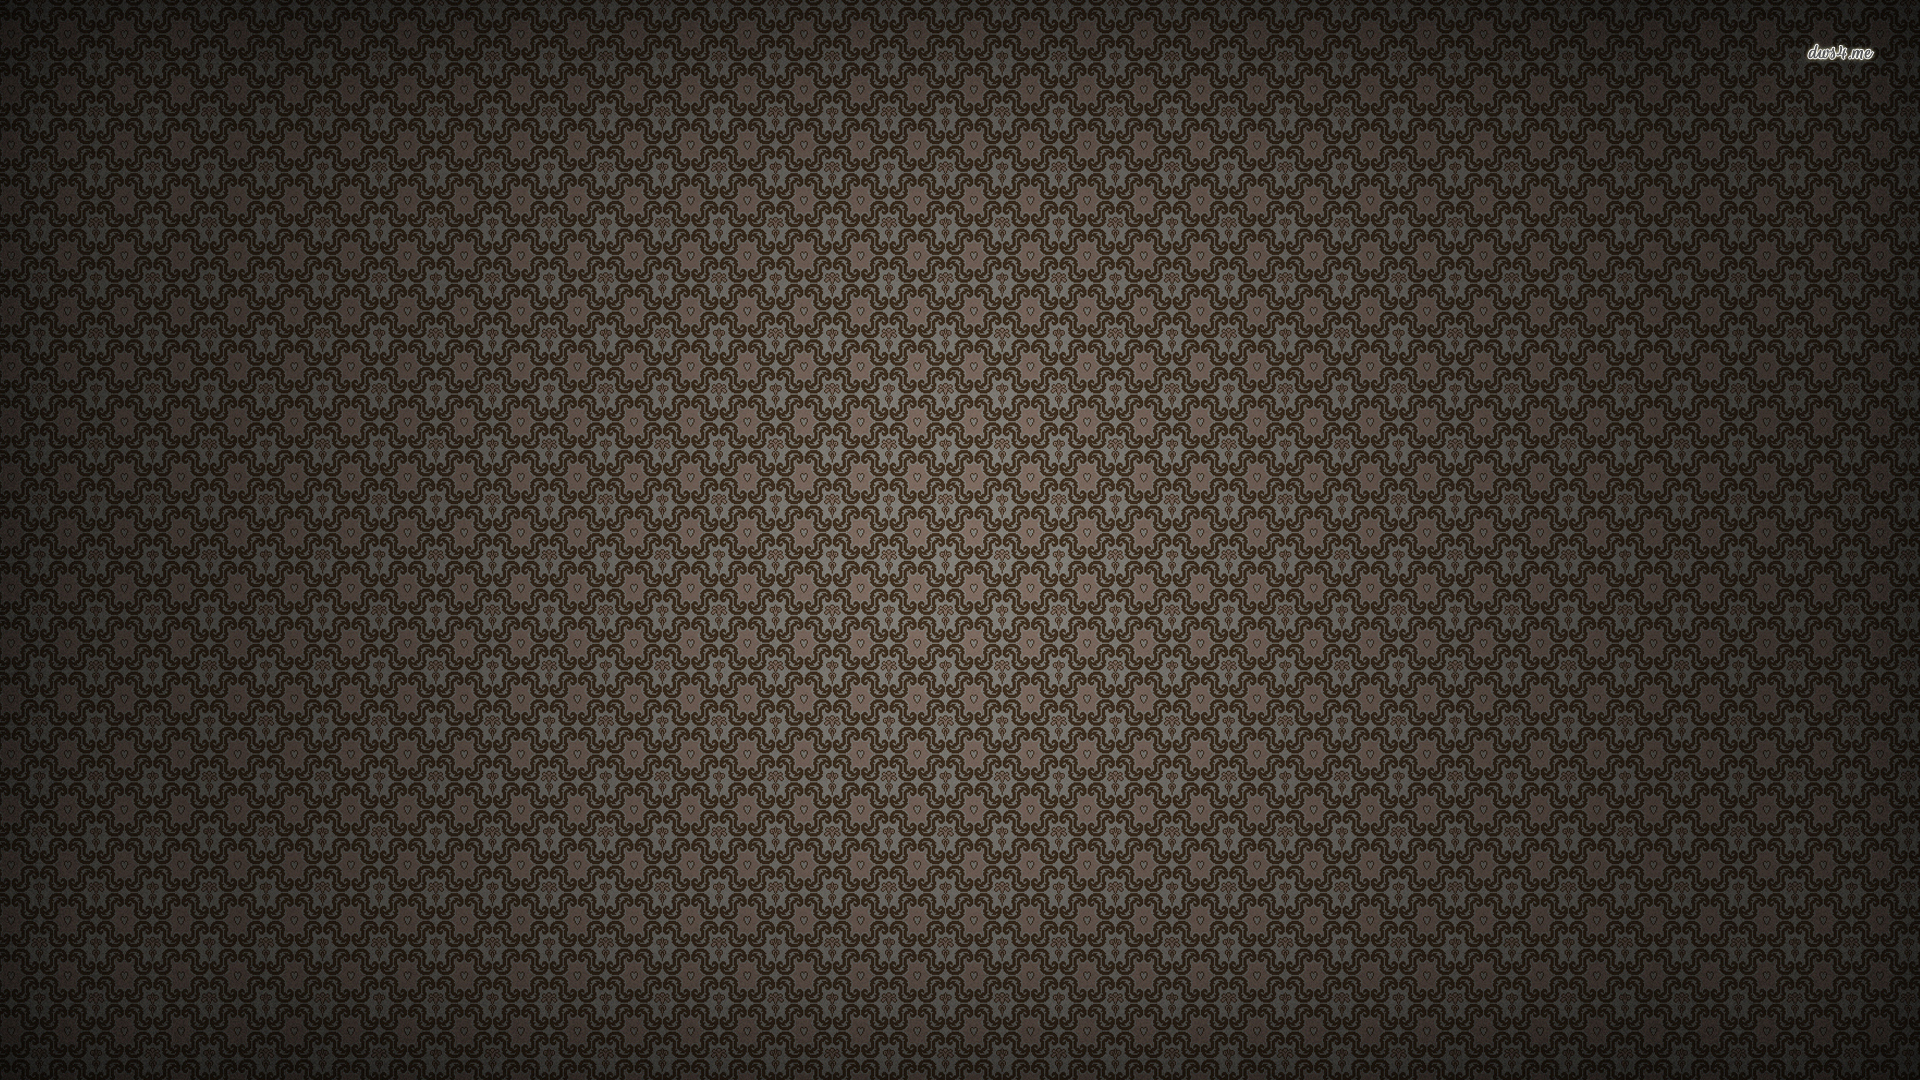 Fabric Wallpaper Picswallpaper